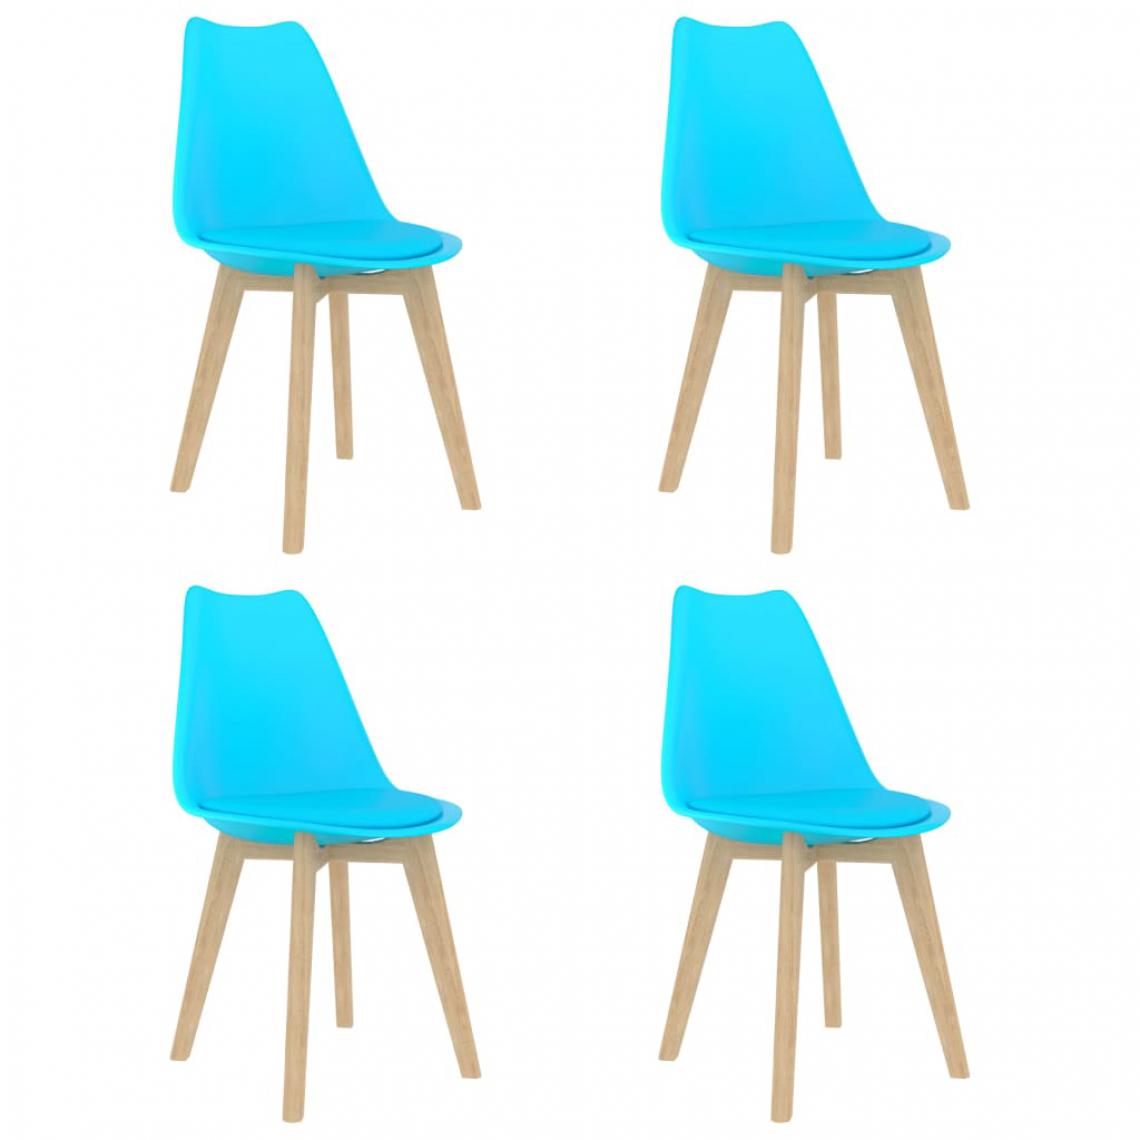 Chunhelife - Chunhelife Chaises de salle à manger 4 pcs Bleu Plastique - Chaises